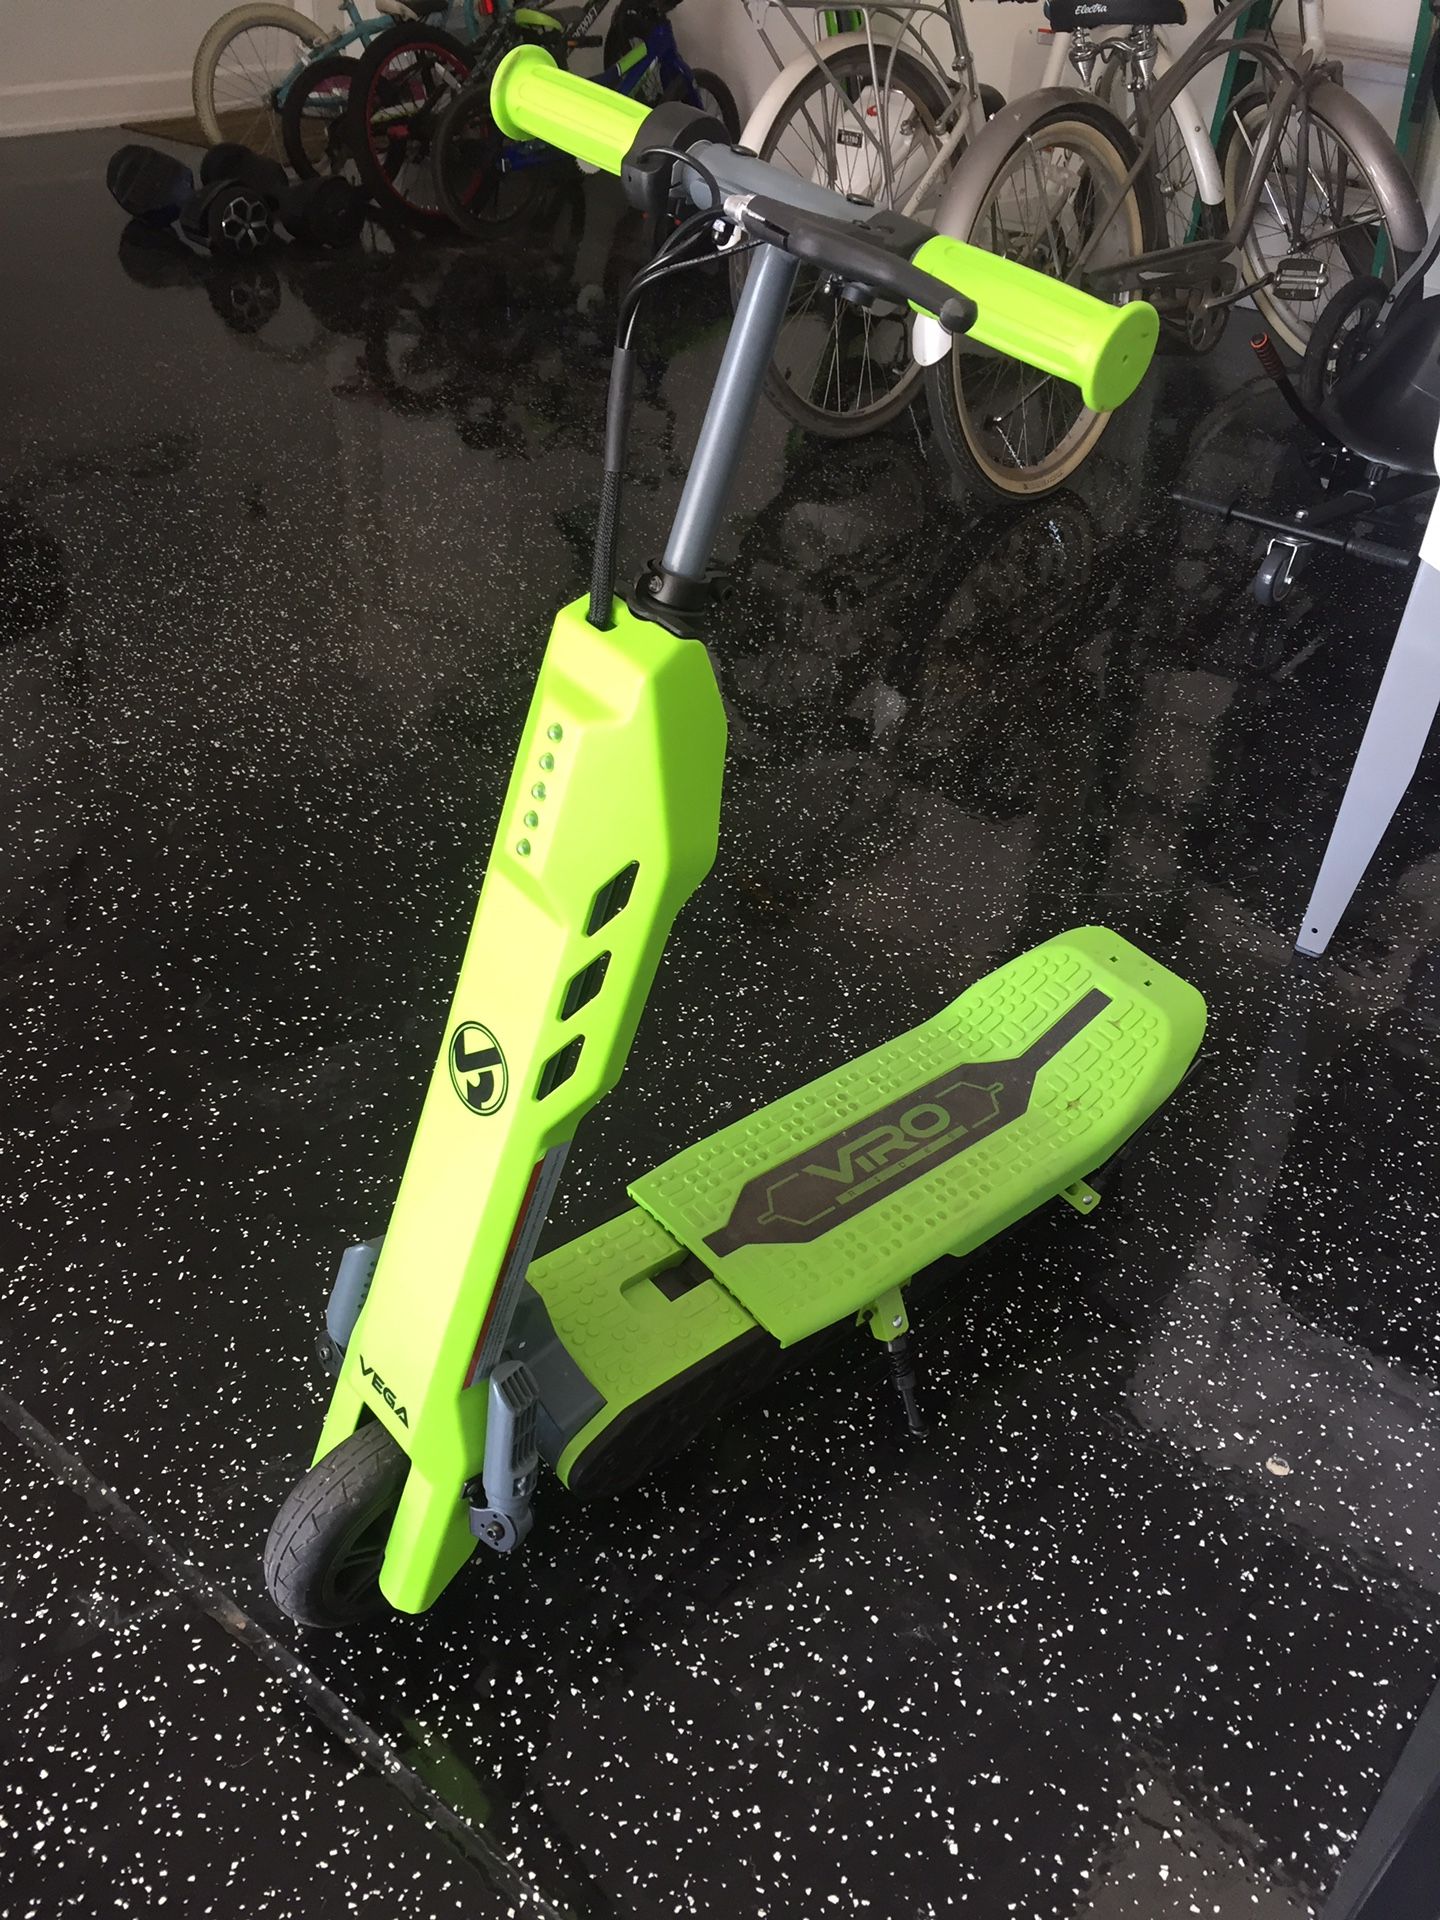 Vega motorized scooter/bike 2 in 1